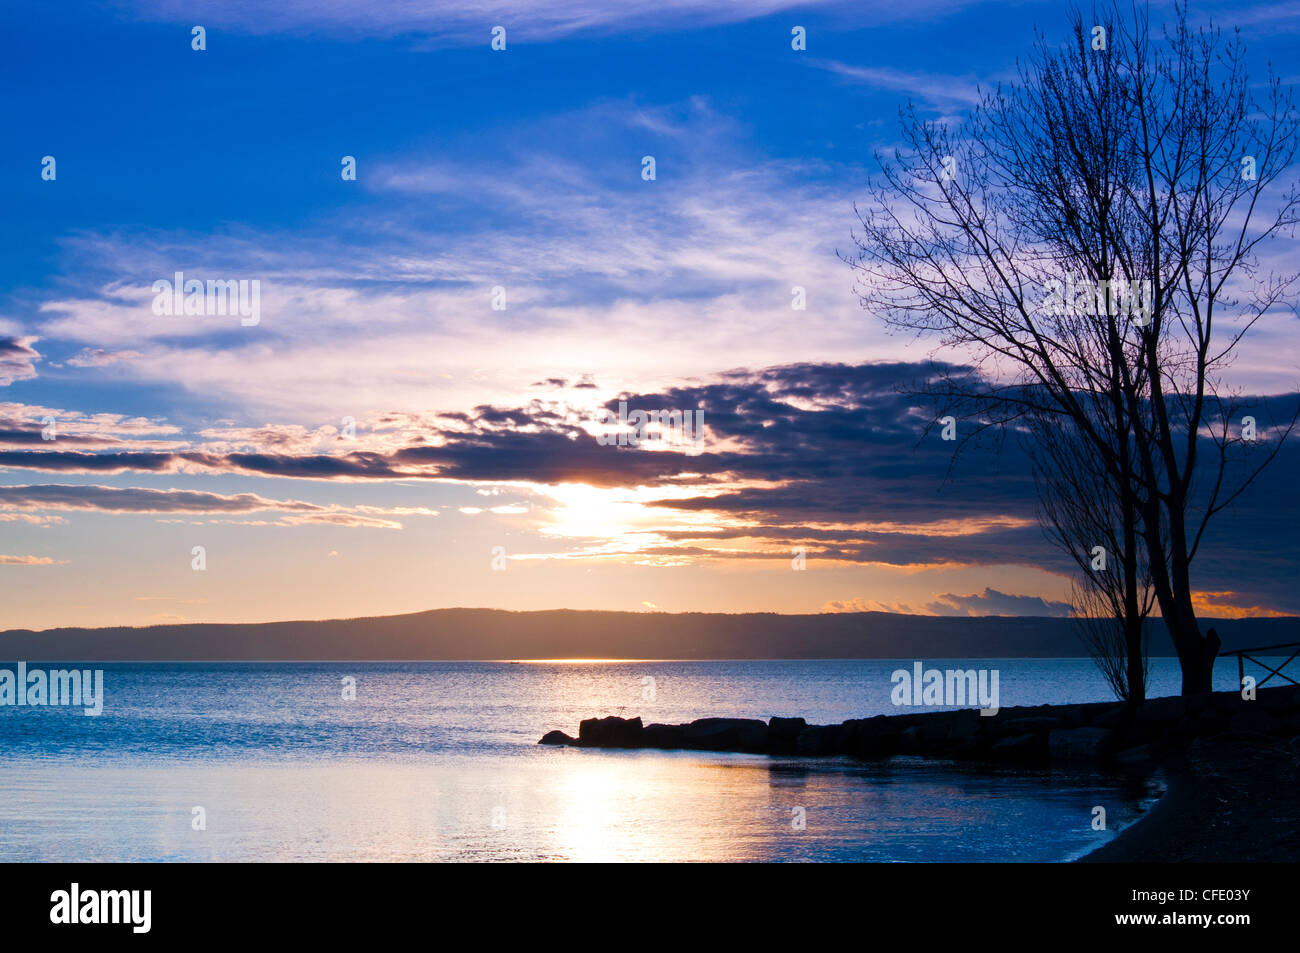 Lake of Bolsena, Bolsena, Viterbo Province, Latium, Italy, Europe Stock Photo